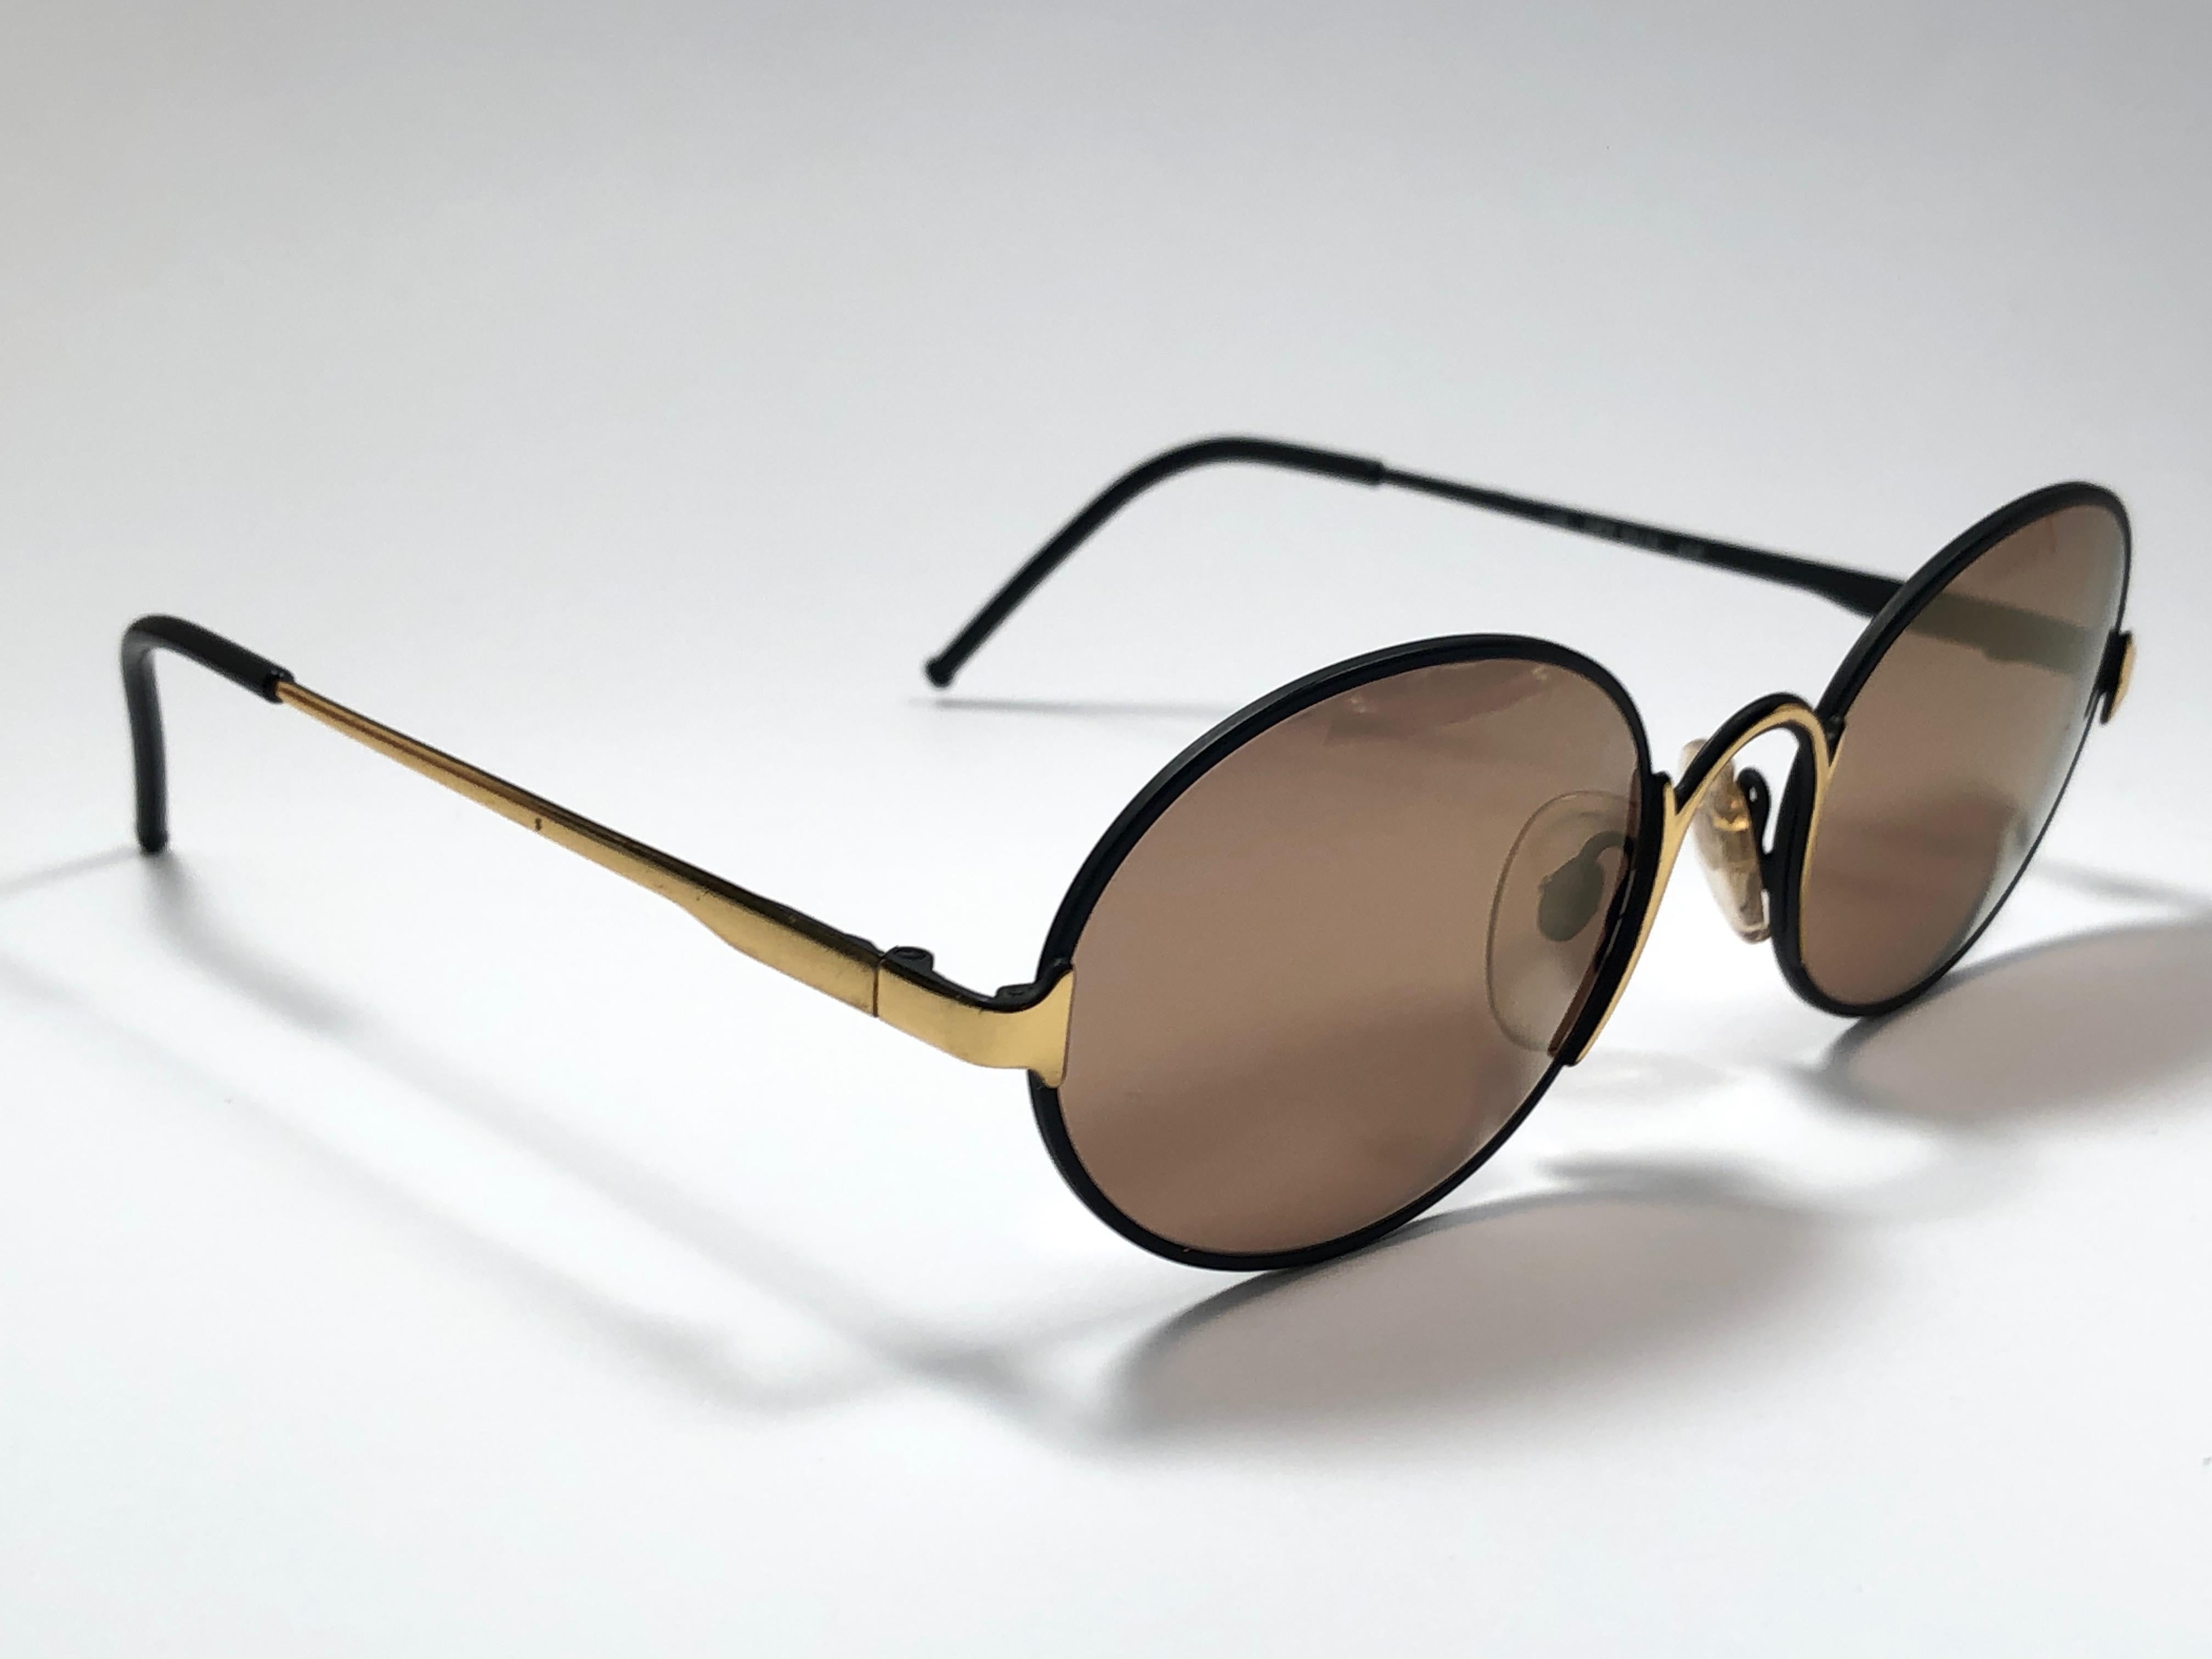 Nouvelles lunettes de soleil vintage Gianfranco Ferre.    

Monture noire avec des détails dorés contenant une paire de lentilles miroir dorées.   

Neuf, jamais porté ou exposé. 

 Fabriquées en Italie.